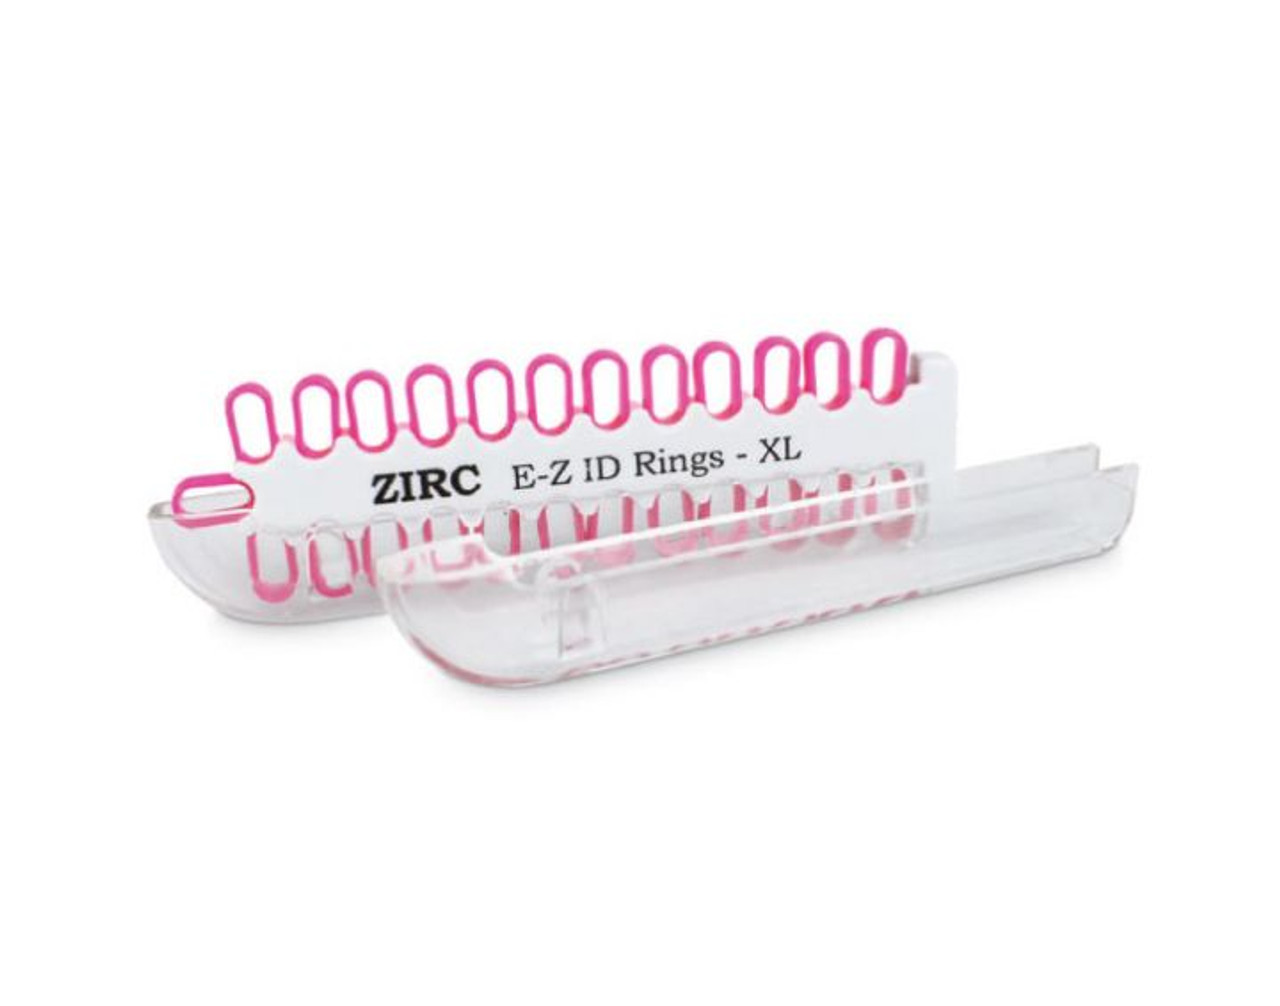 Zirc E-Z ID Rings XL, Blue, 25pk